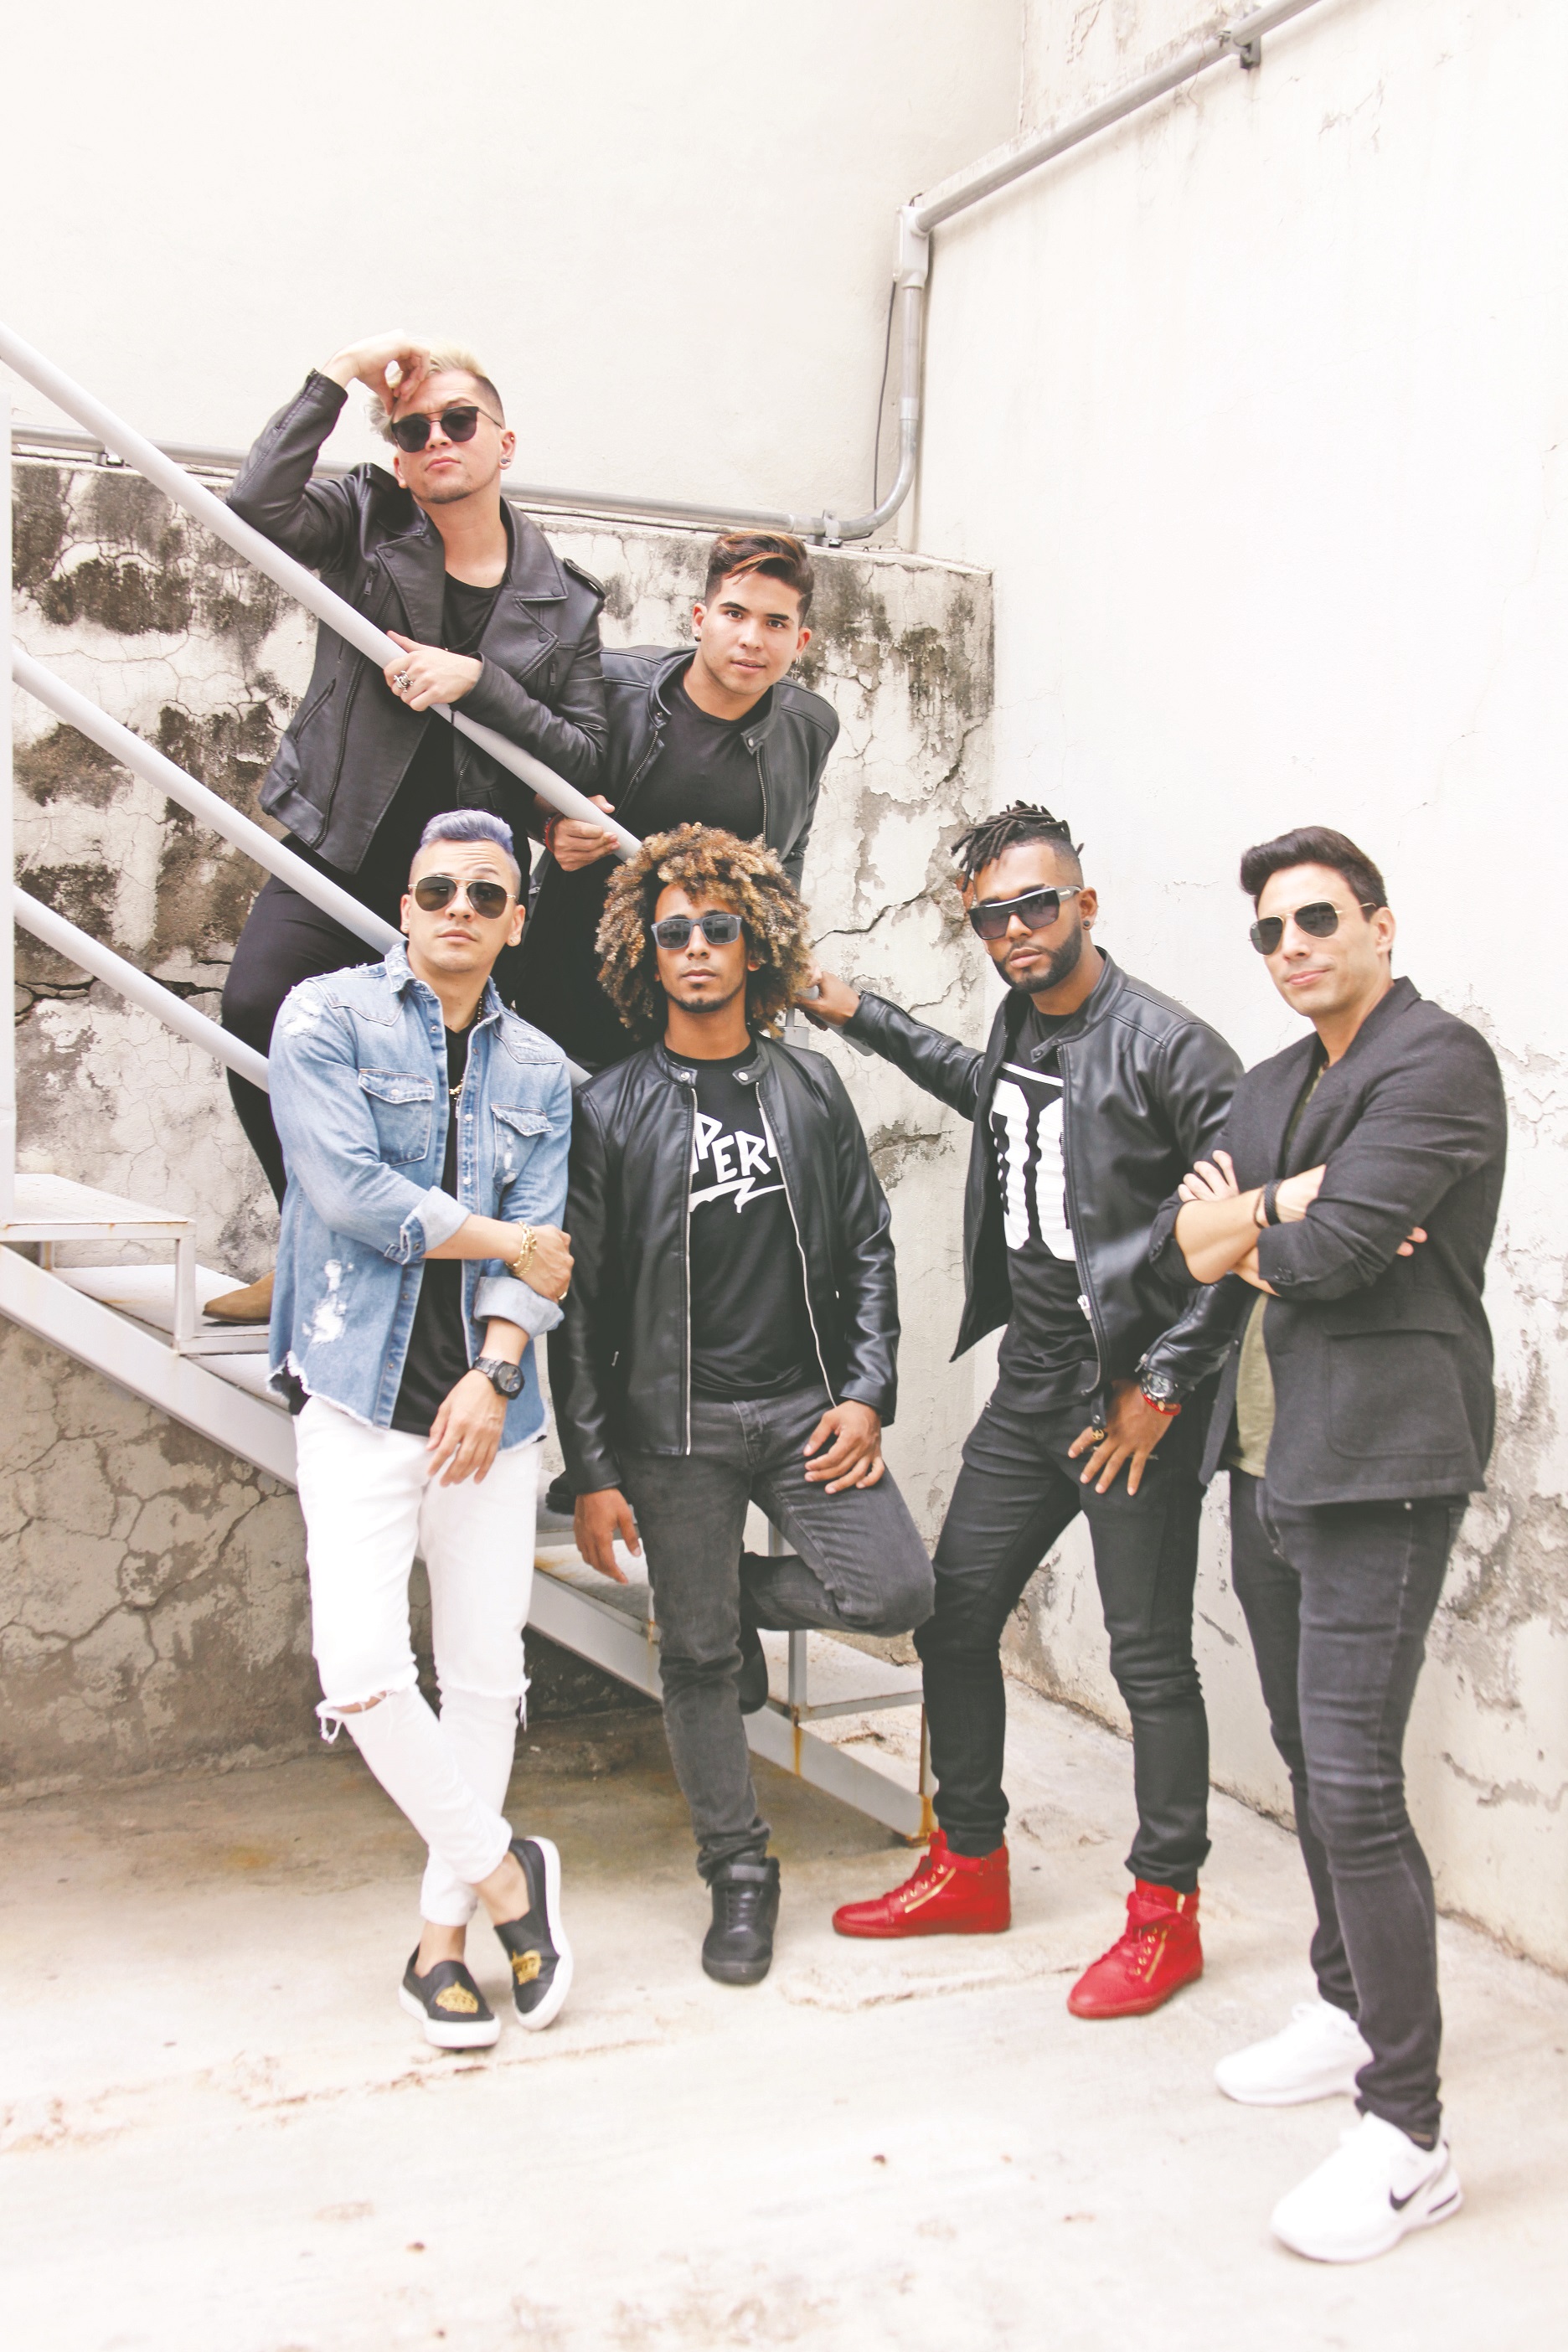 Flex y Patricio Amaro se unen a 4U, la primera boy band paname&ntilde;a integrada por Joy, Thavo, Maik y &Aacute;ngel, para posicionarse dentro del pop latino